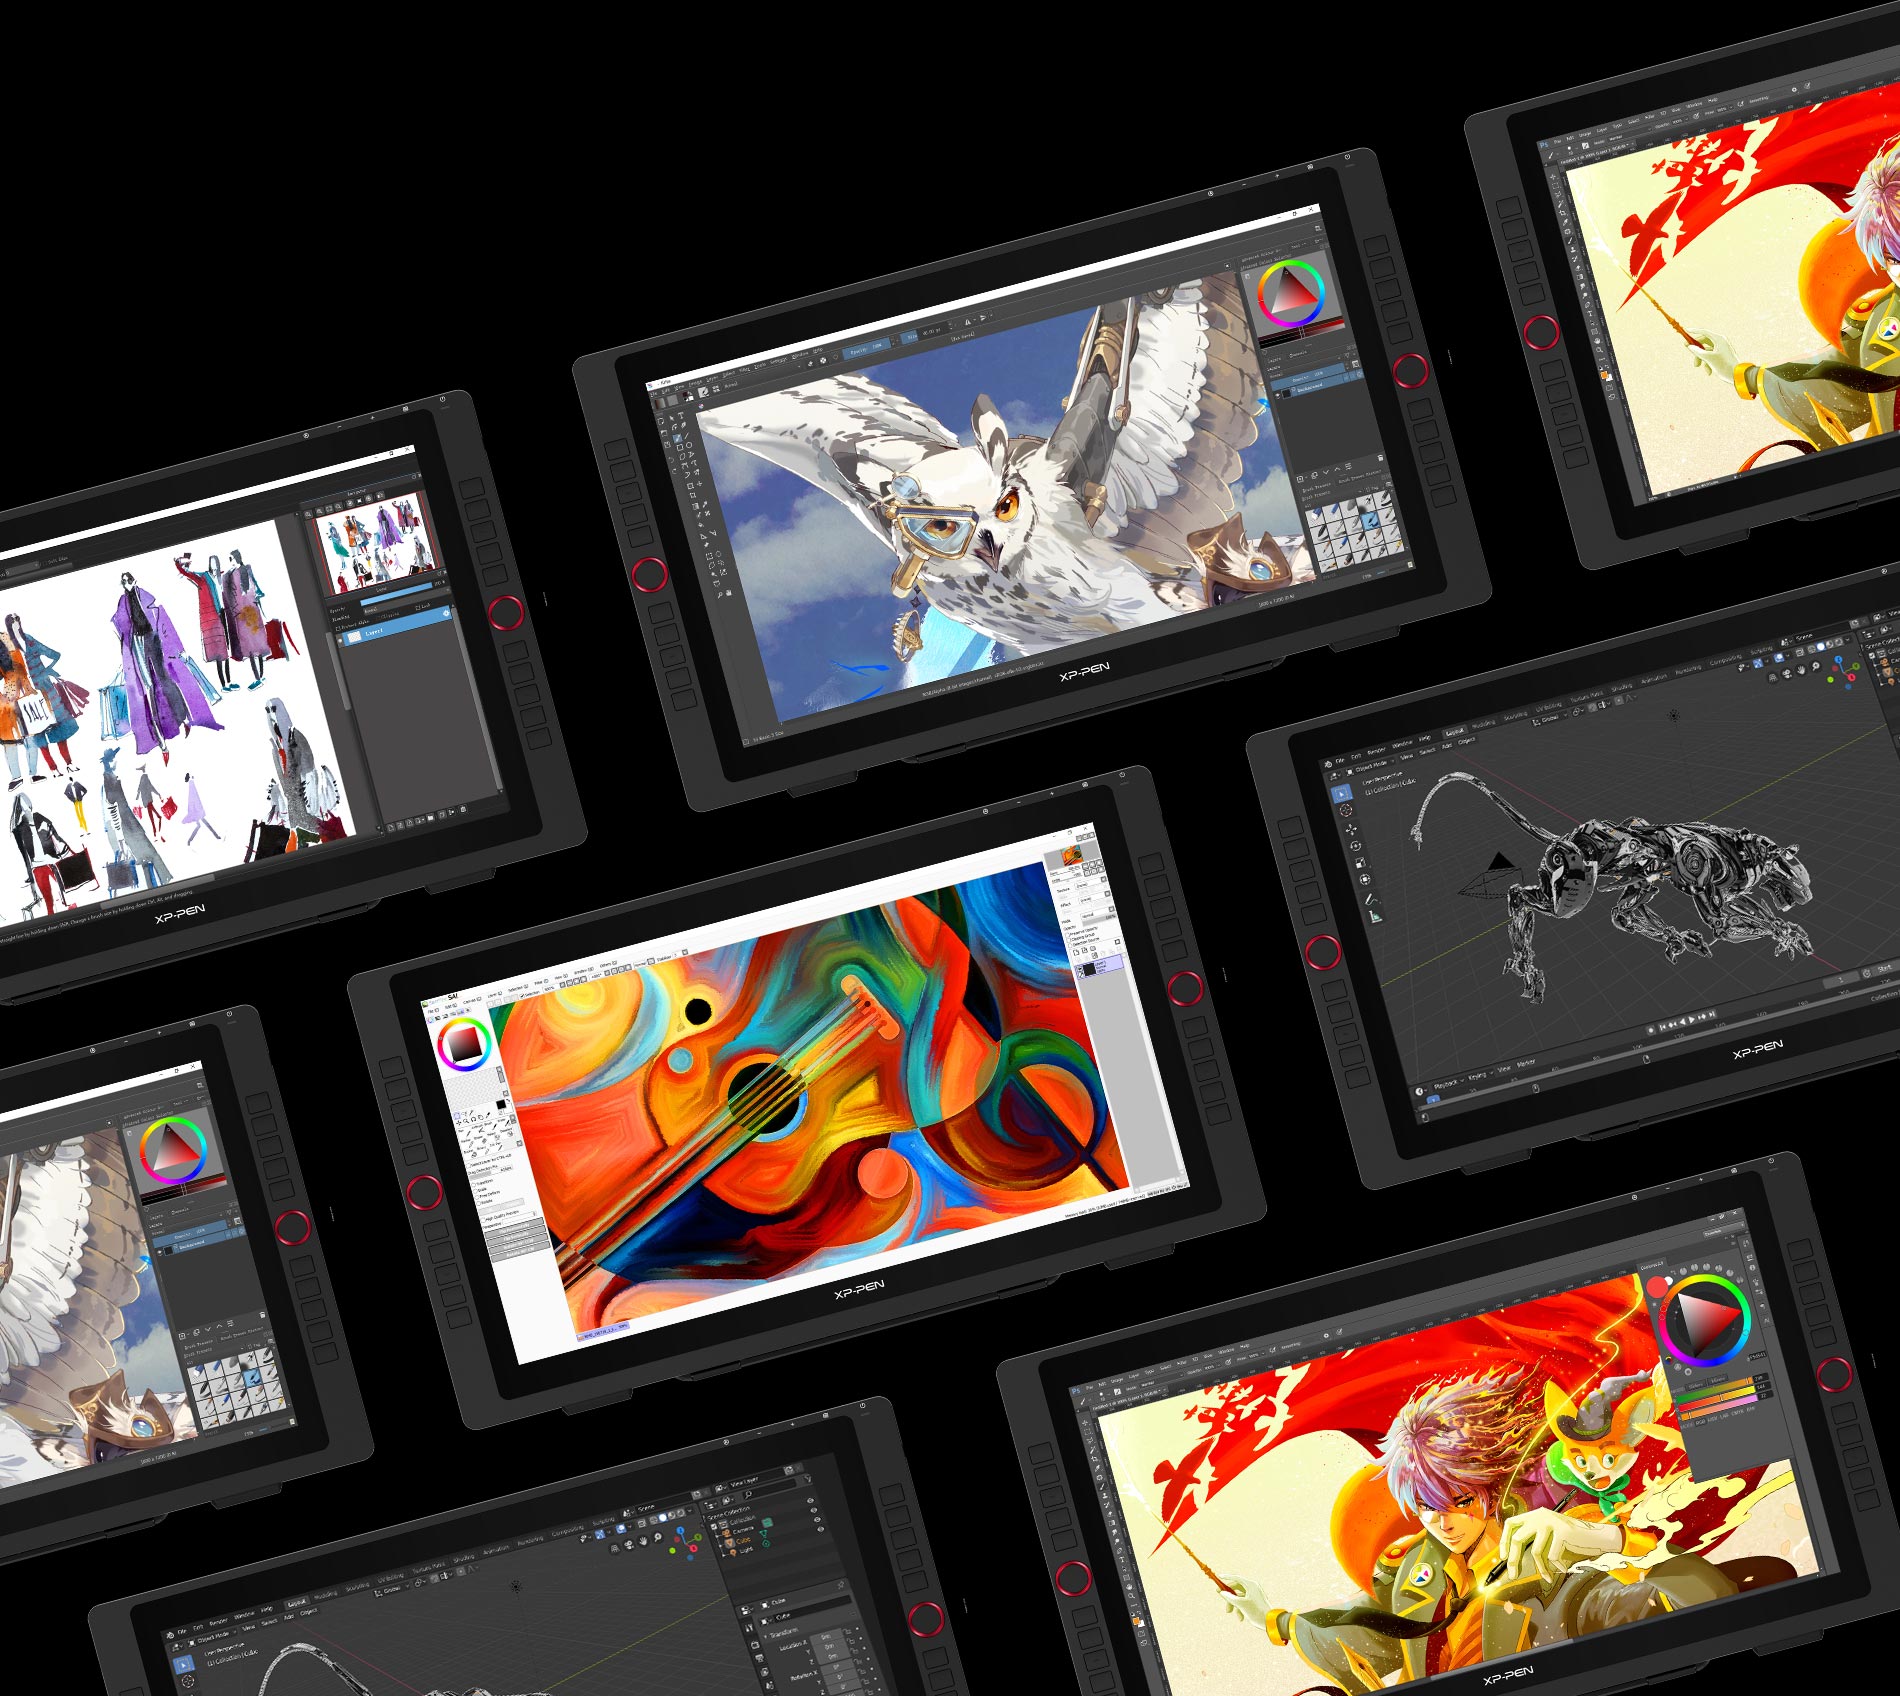  tela digitalizadora XP-Pen Artist 22R Pro Compatível com a maioria dos sistemas operacionais e aplicativos 